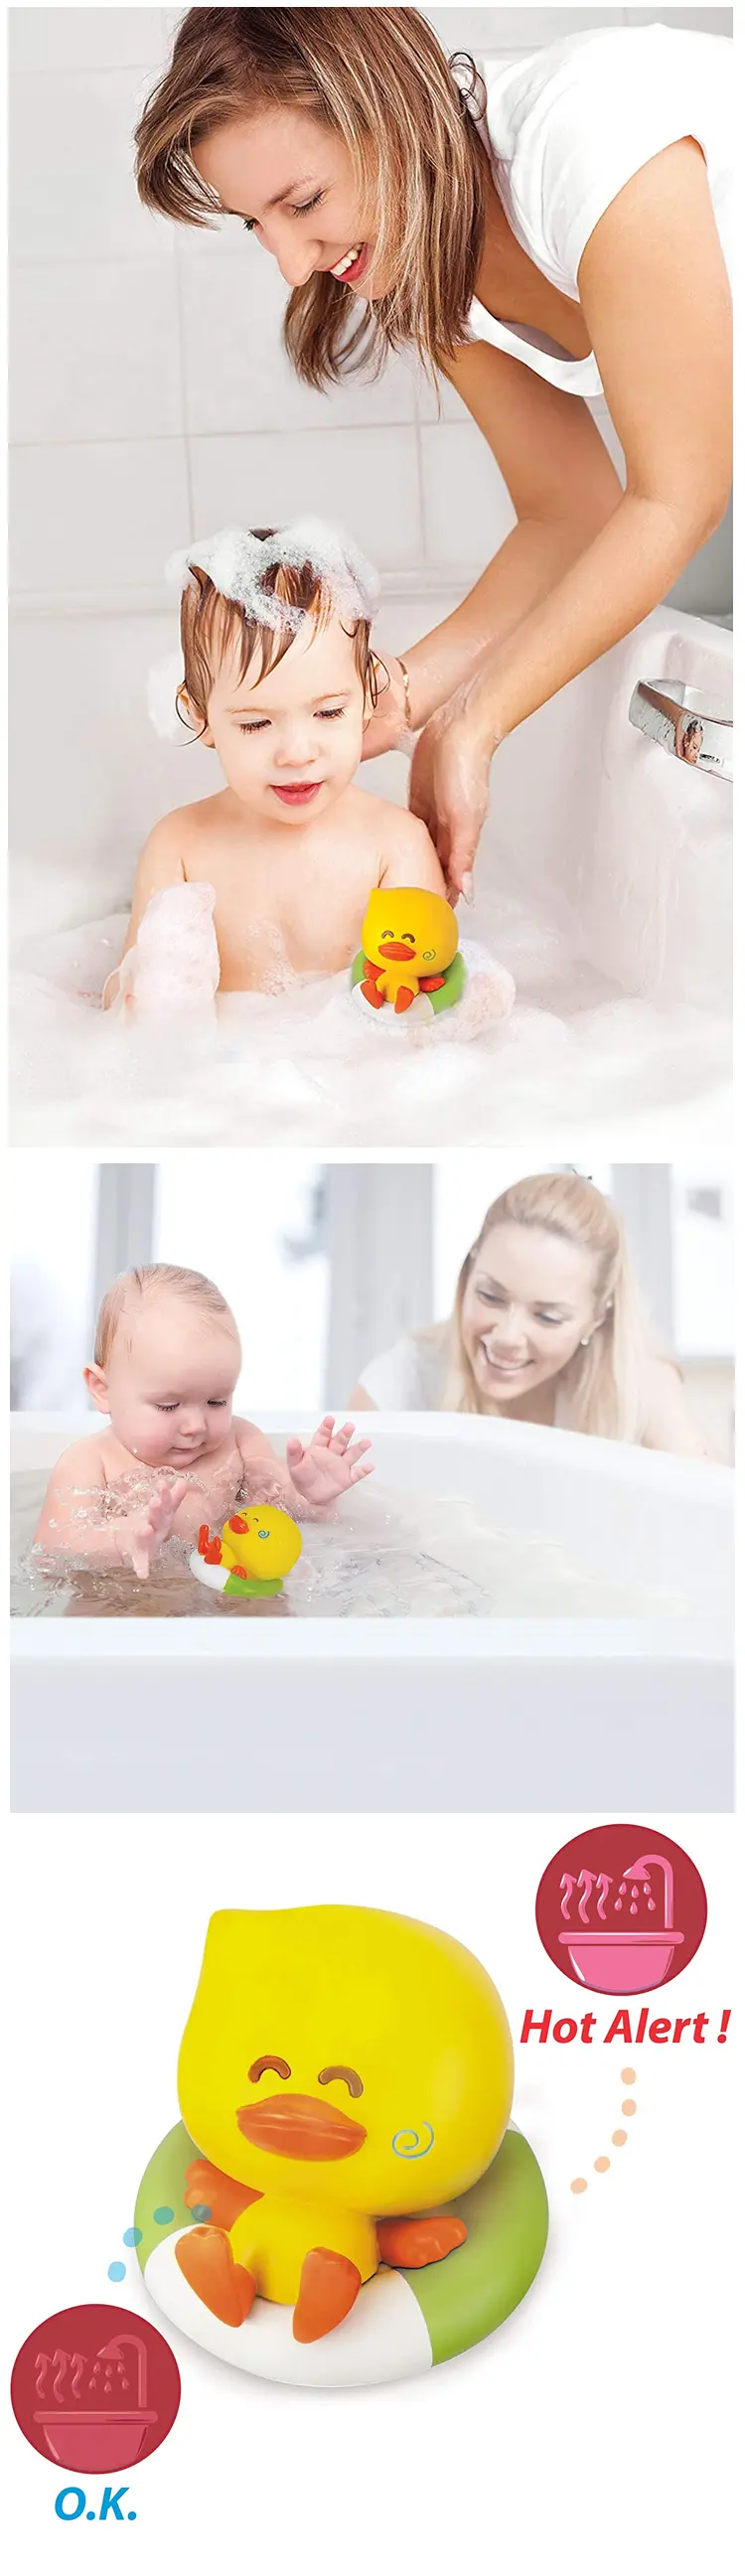 infantino 感温小鸭洗澡玩具(水温提示)